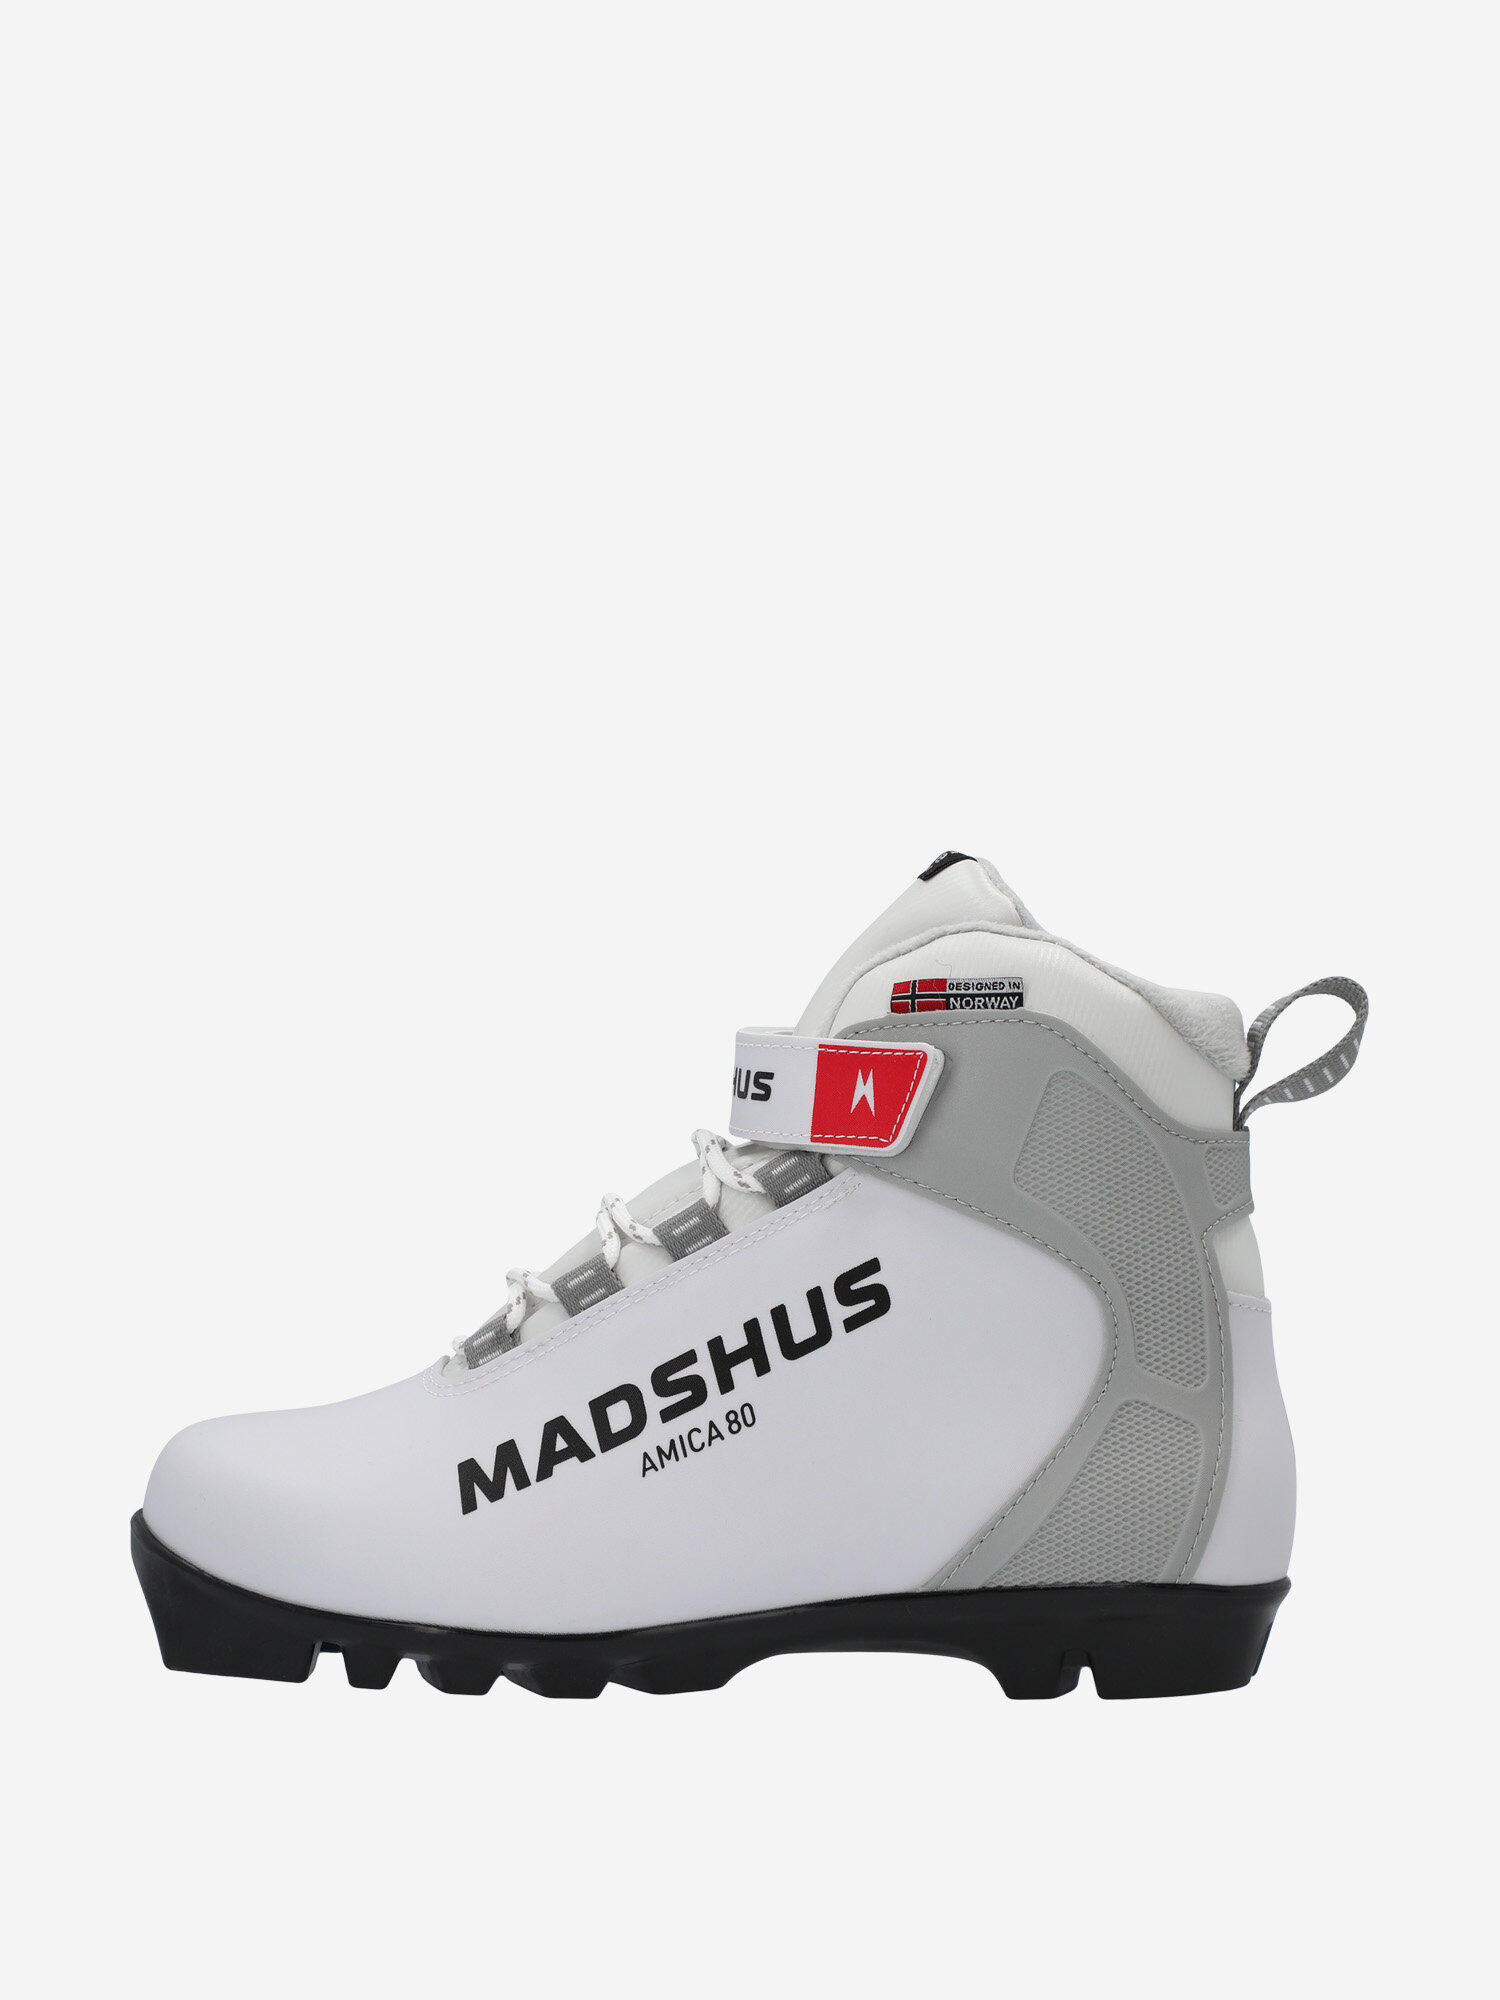 Ботинки для беговых лыж женские Madshus Amica 80 Белый; RUS: 37, Ориг: 37